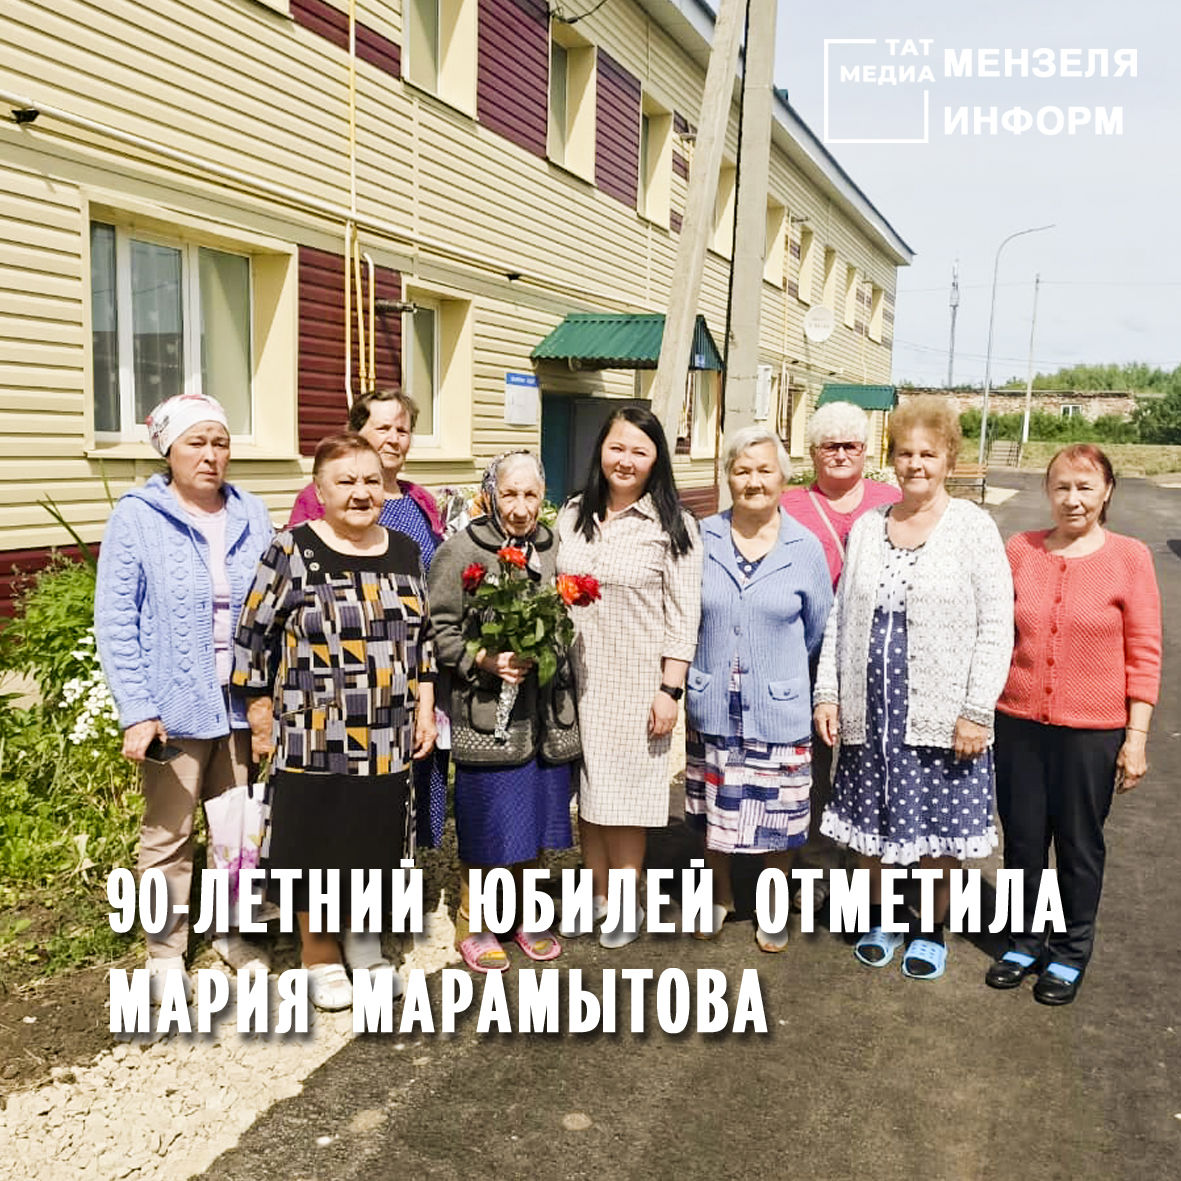 90-летний юбилей отметила жительница города Мензелинск, труженица тыла, ветеран труда МАРИЯ МАРАМЫТОВА